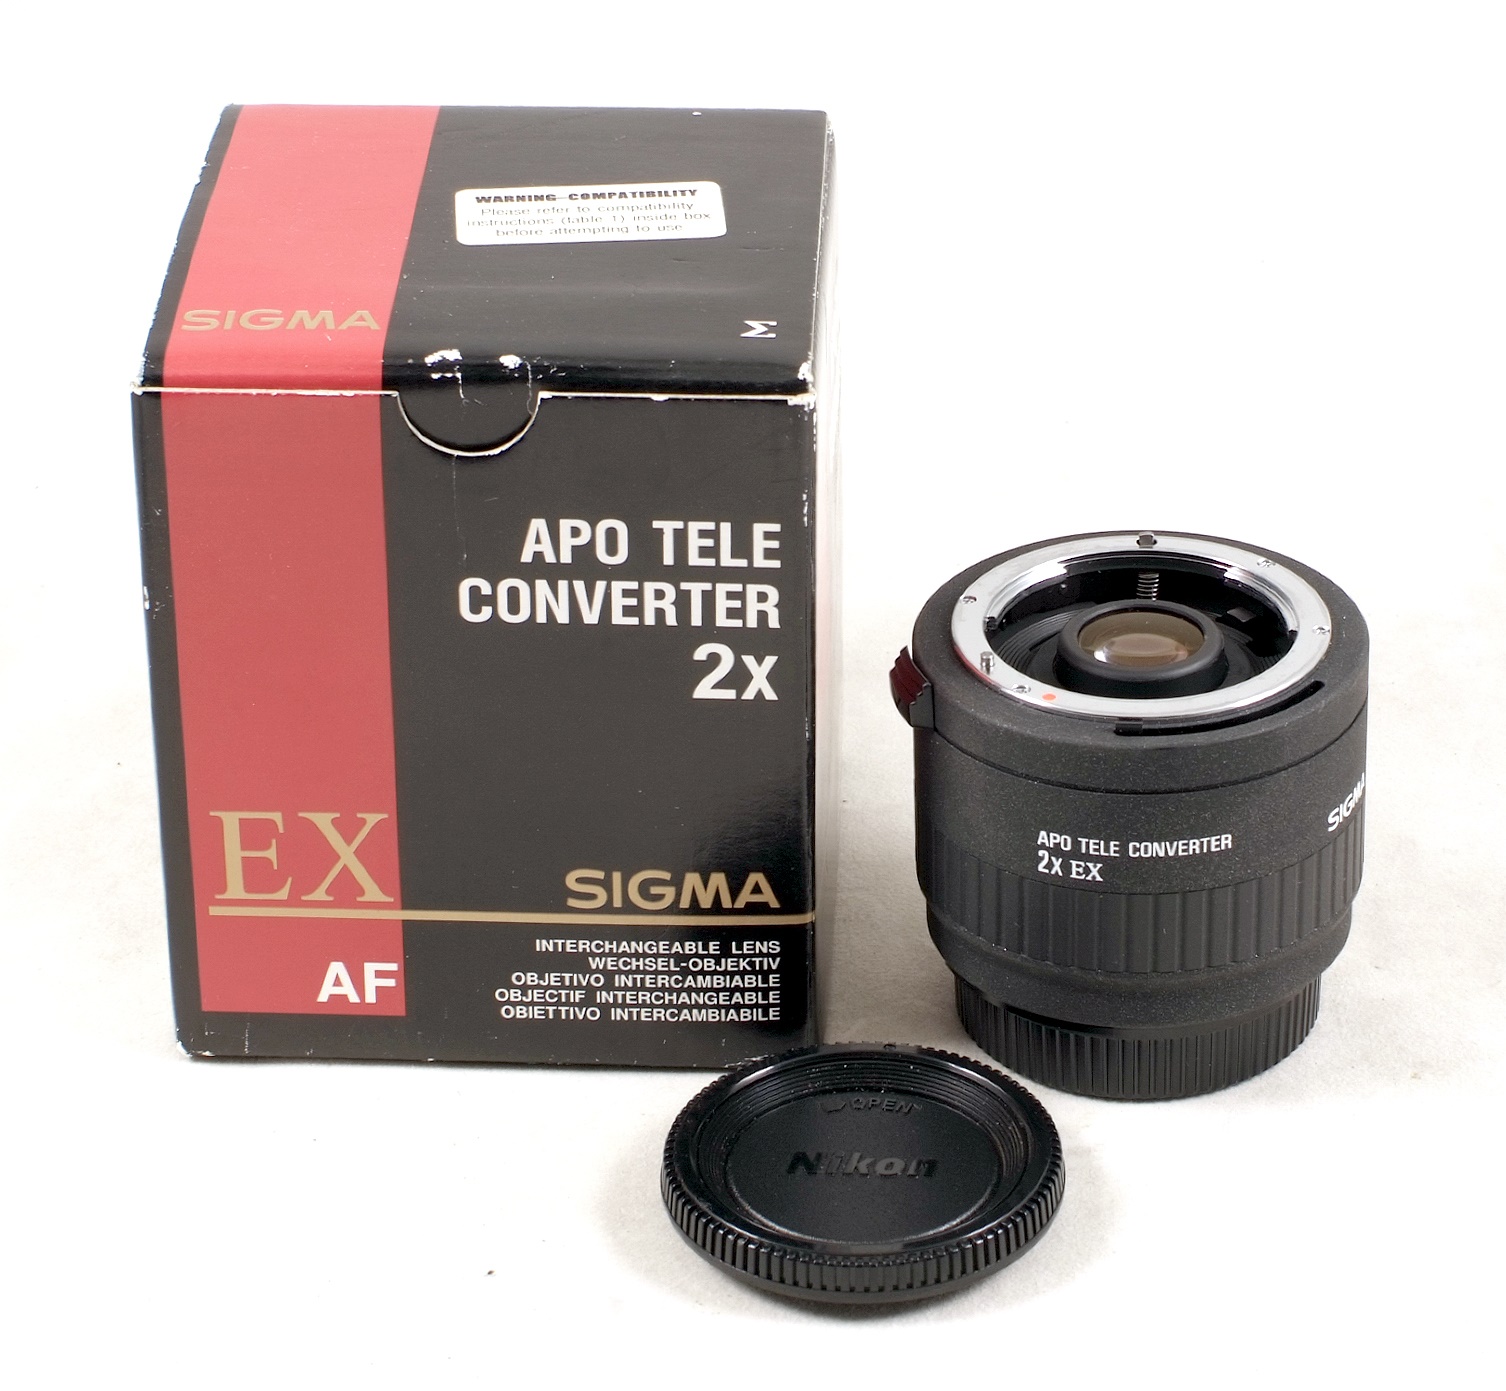 Nikon Fit Sigma EX 2x APO D Converter for Telephoto Lenses.